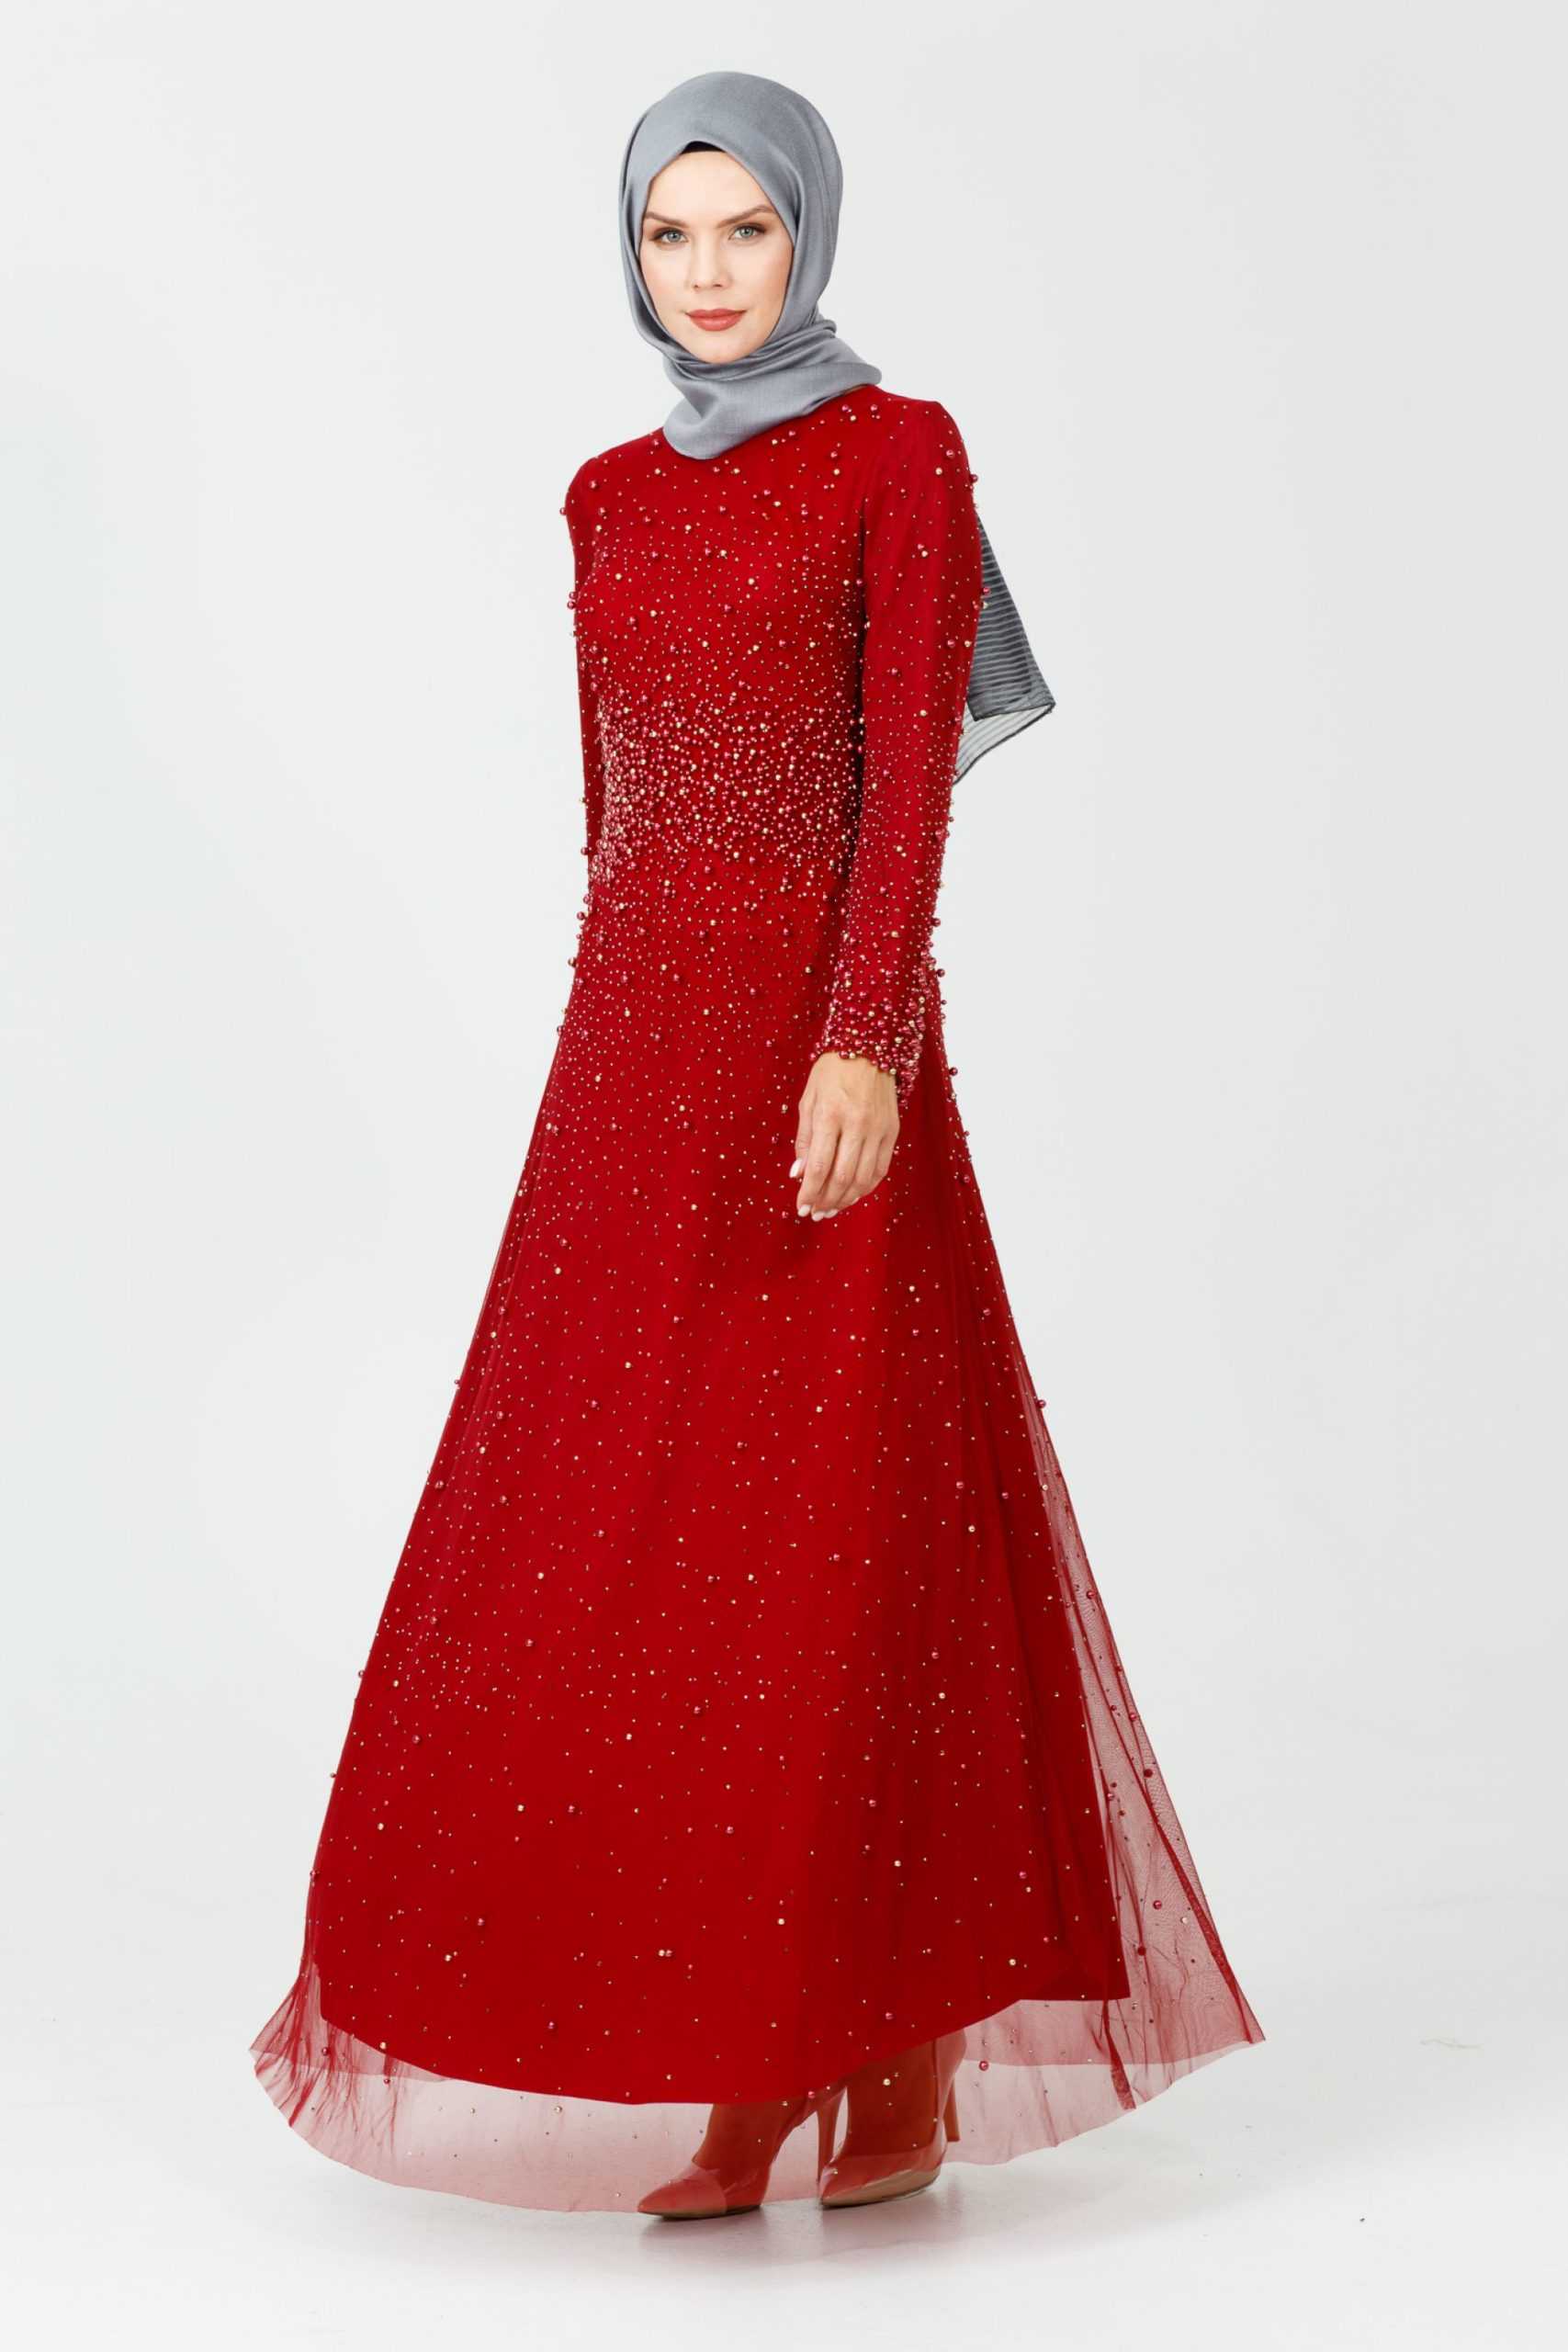 Setrms Kırmızı Tesettür Abiye Elbise Modelleri